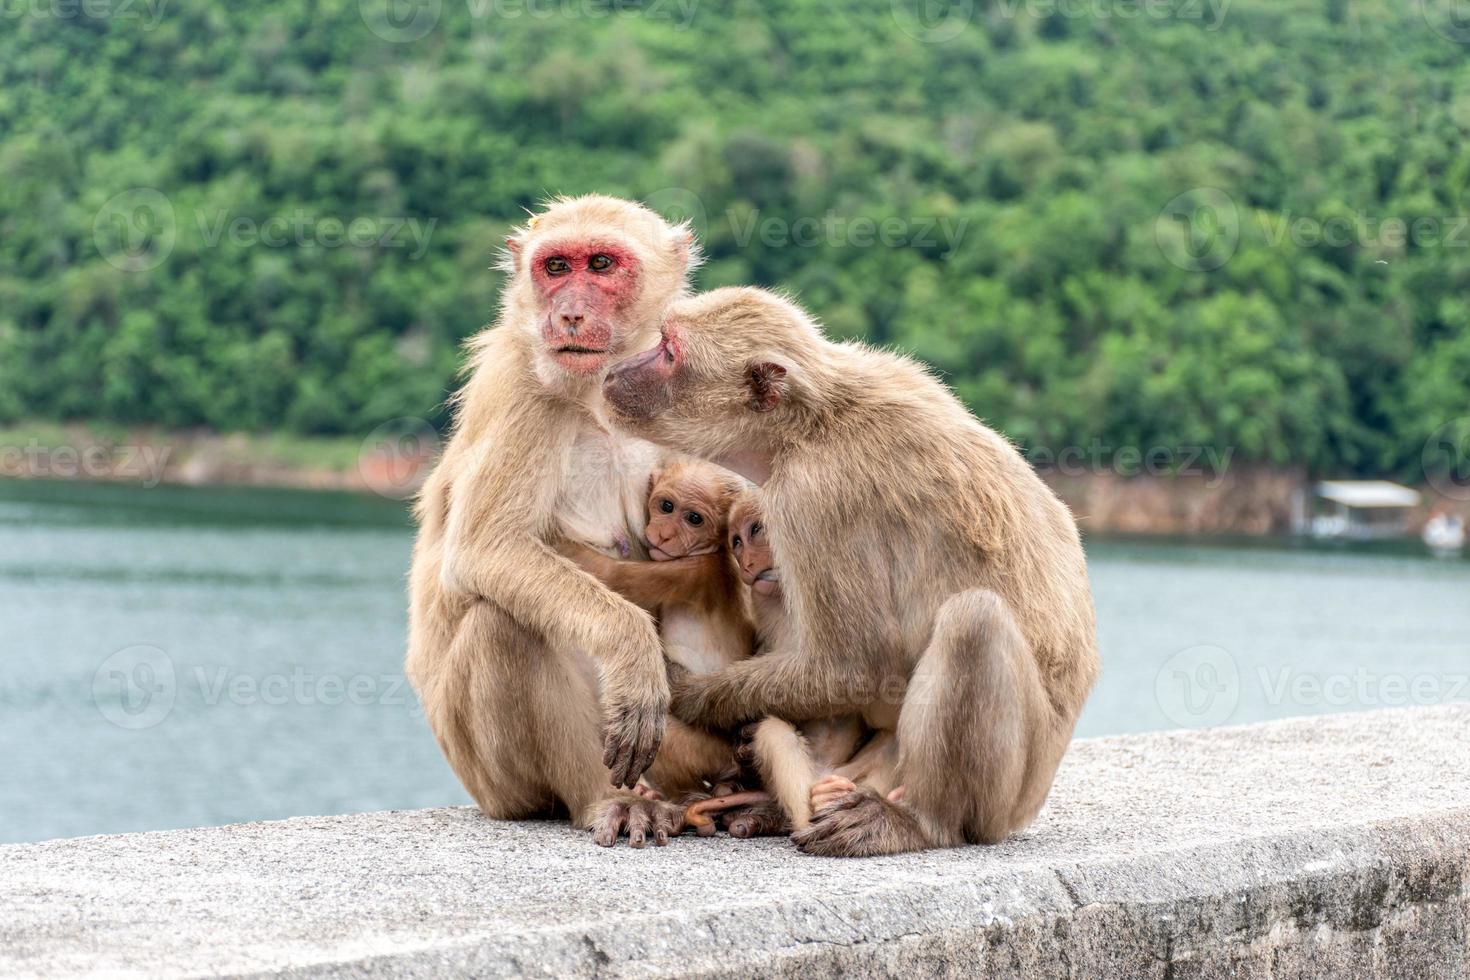 pais macacos, mães macacos e filhotes de macacos vivem juntos como uma família. foto